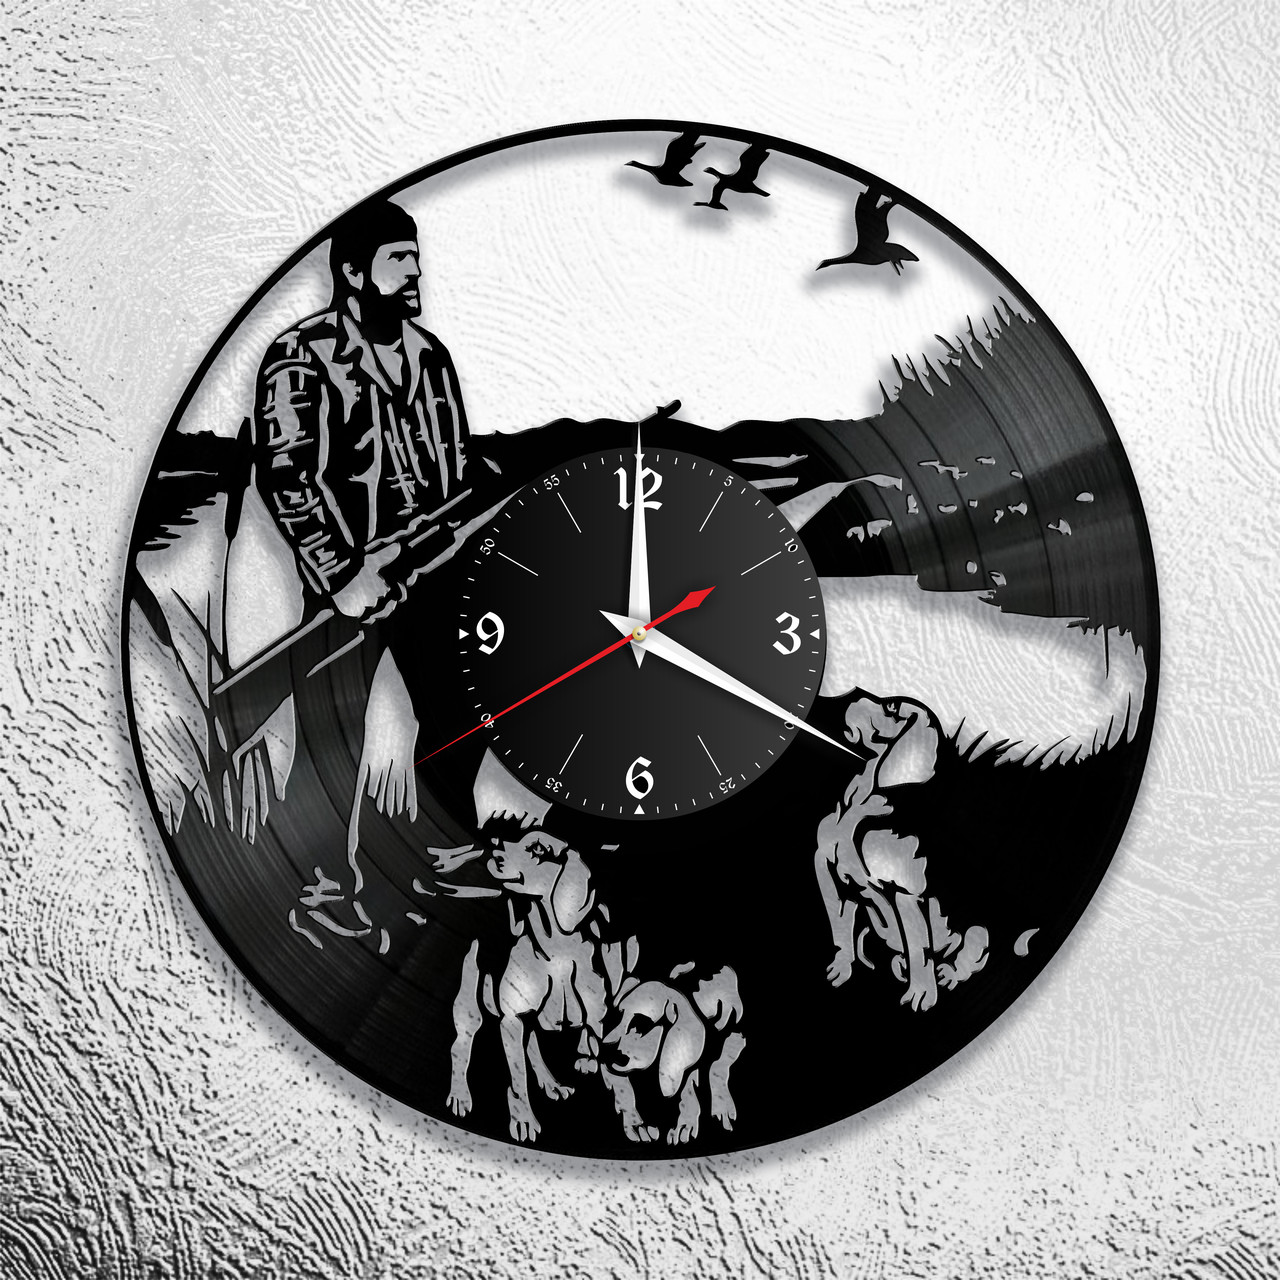 Оригинальные часы из виниловых пластинок "Охота" версия 3